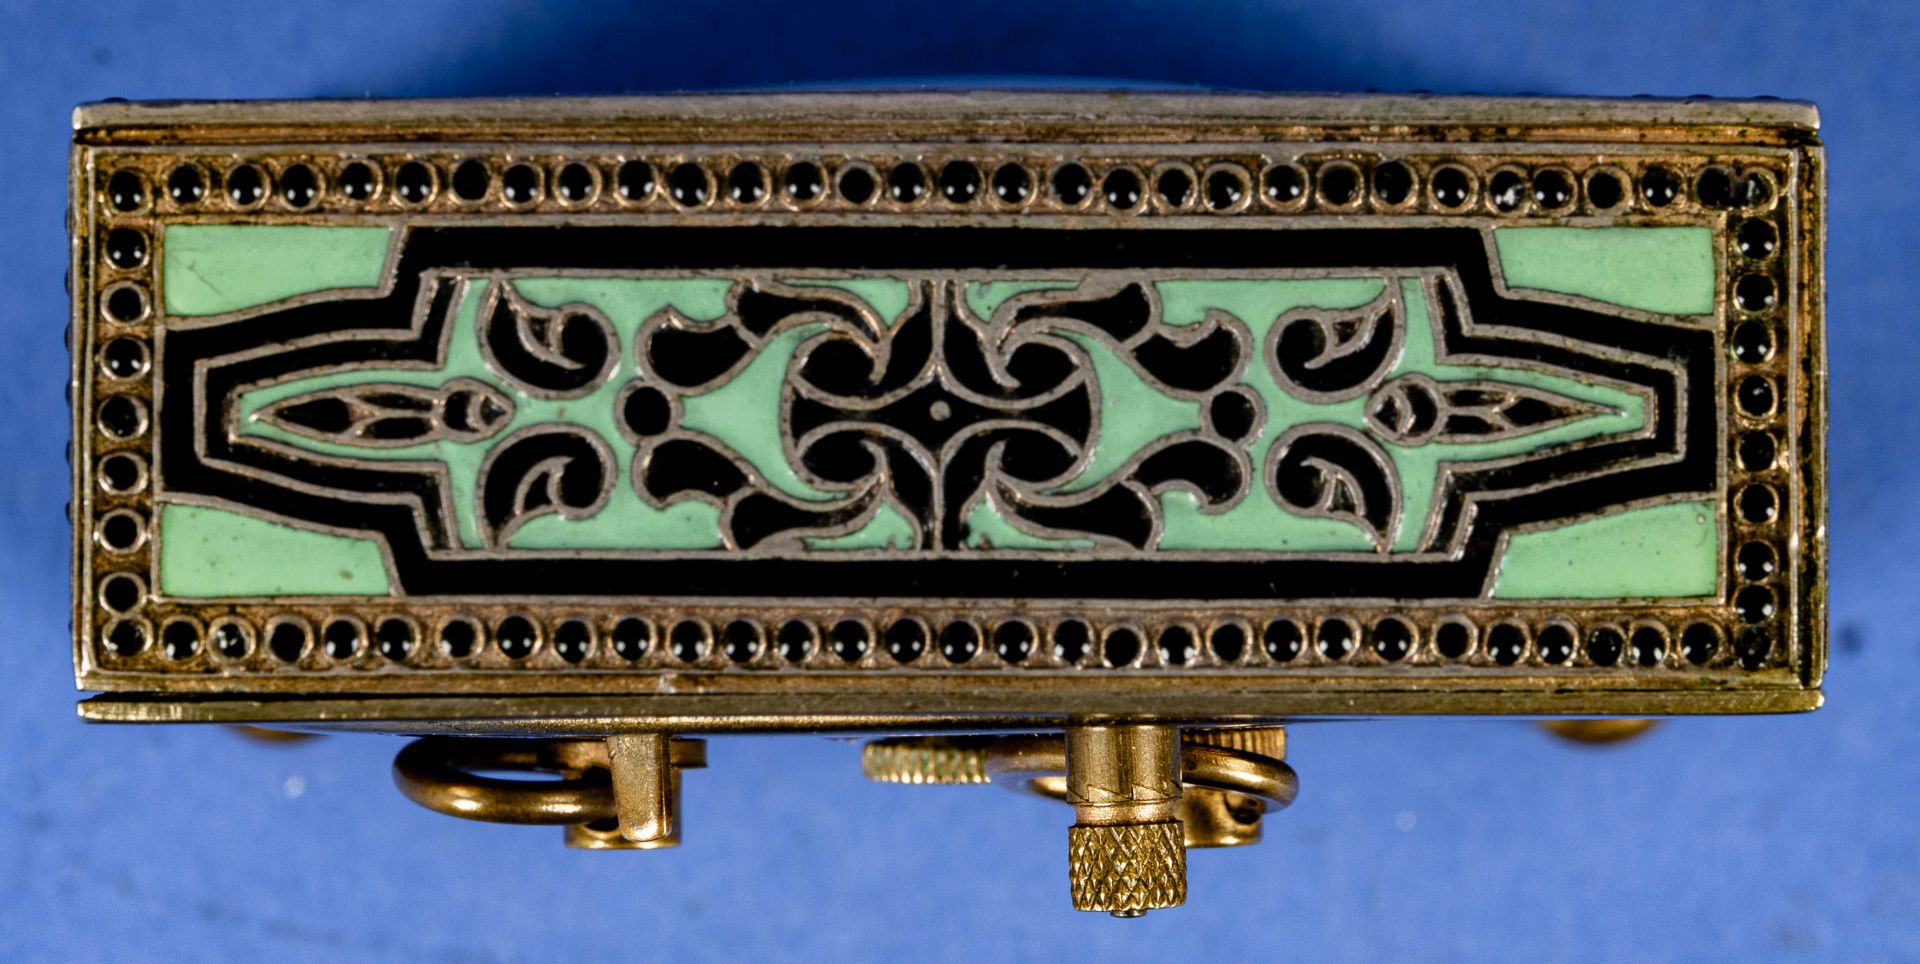 Feiner Tischwecker der Marke Kienzle, vergoldetes Messinggehäuse mit grün-schwarzen Emaille-Dekoren - Bild 4 aus 8